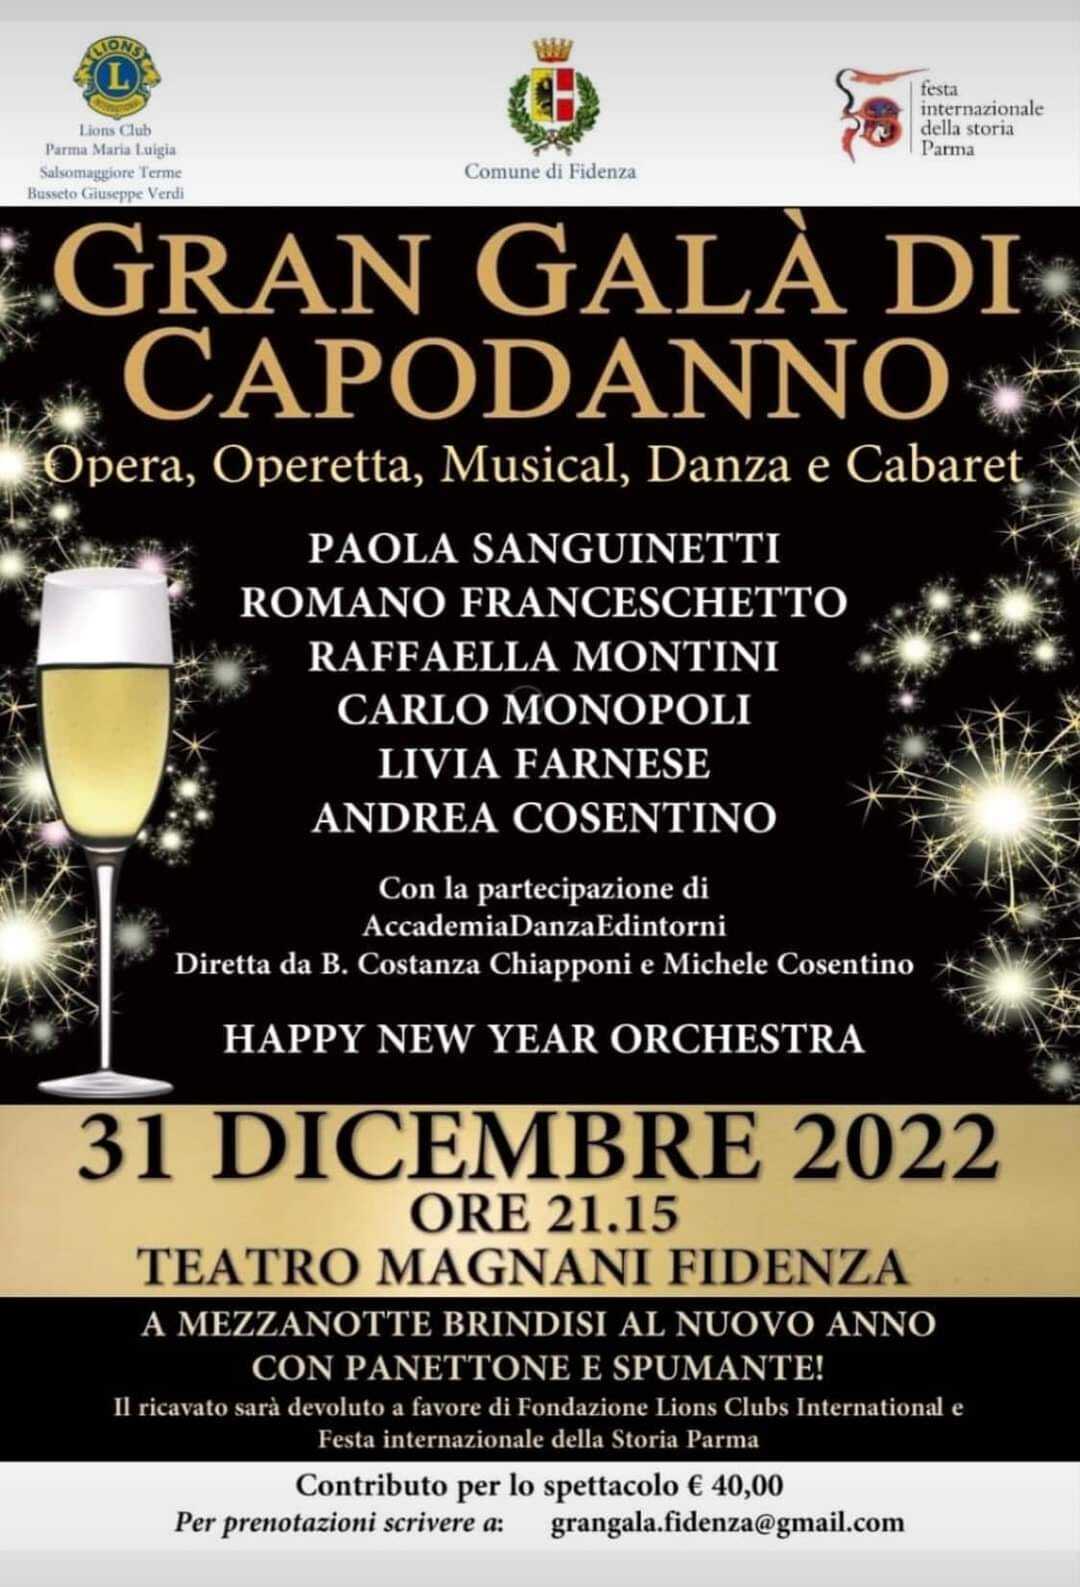 Gran galà di Capodanno al Teatro Magnani, opera, operetta, musical, danza, cabaret